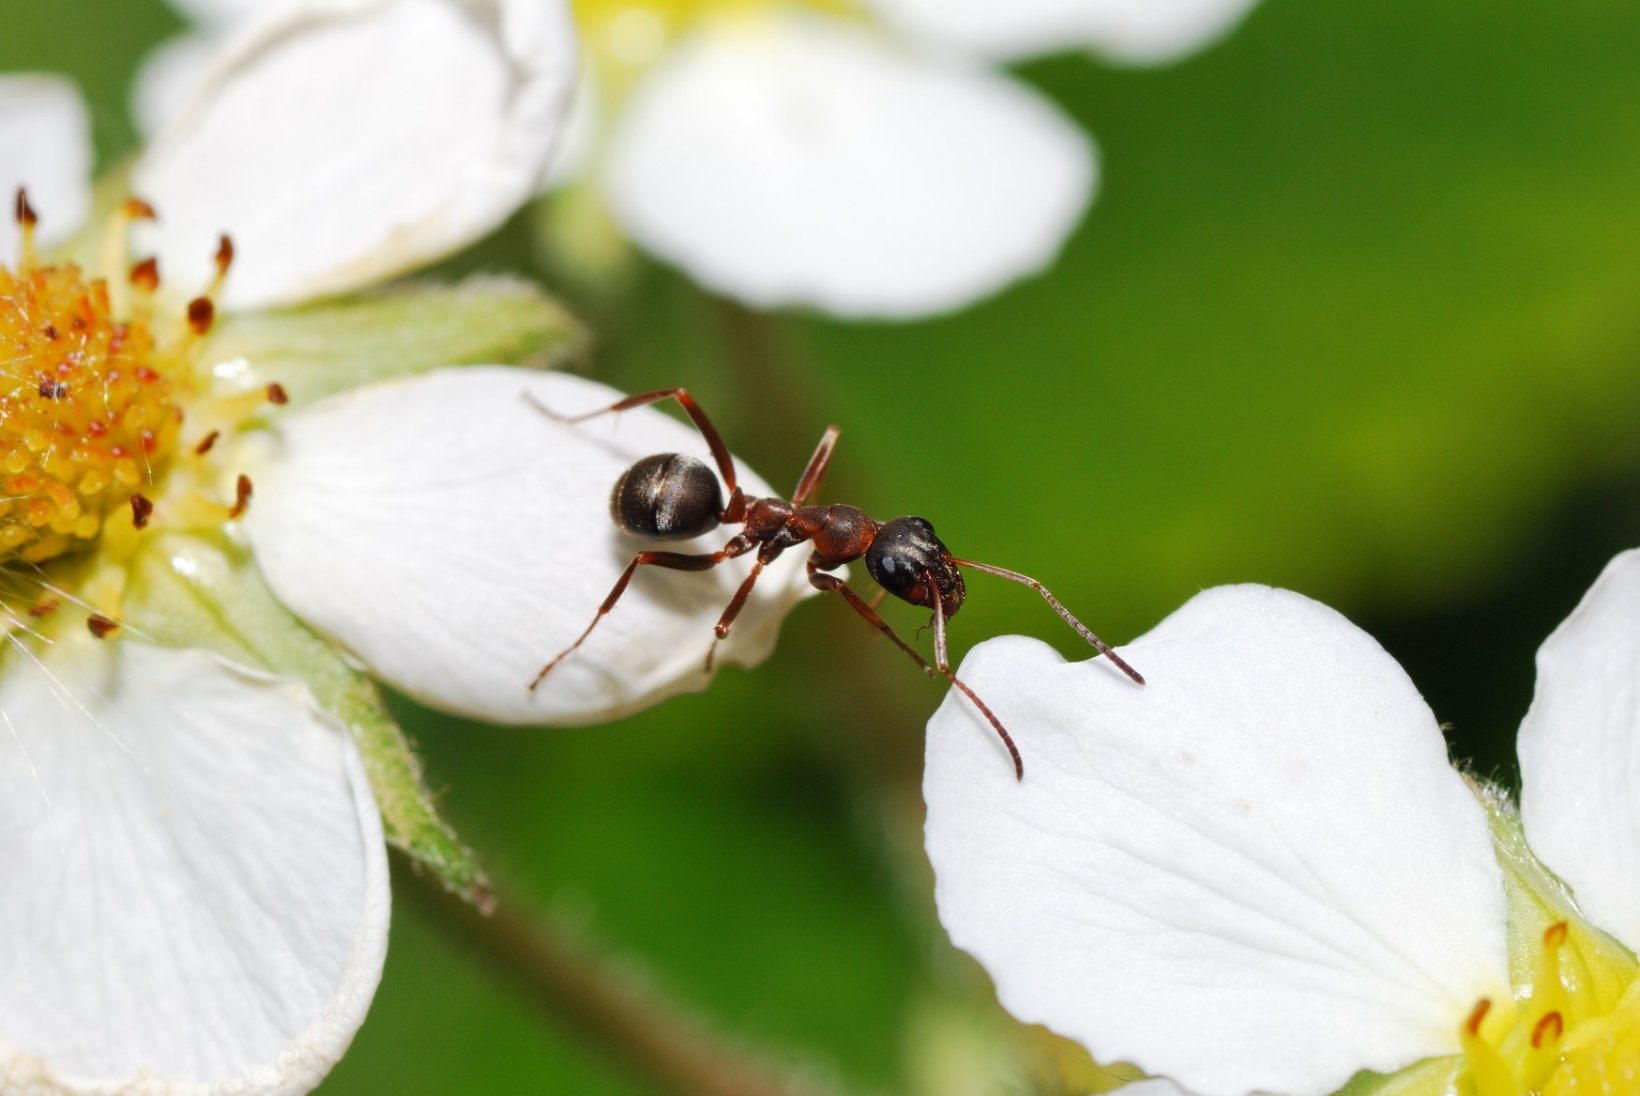 Eesti teadlane avastas, et tõbised sipelgad võtavad ravimeid